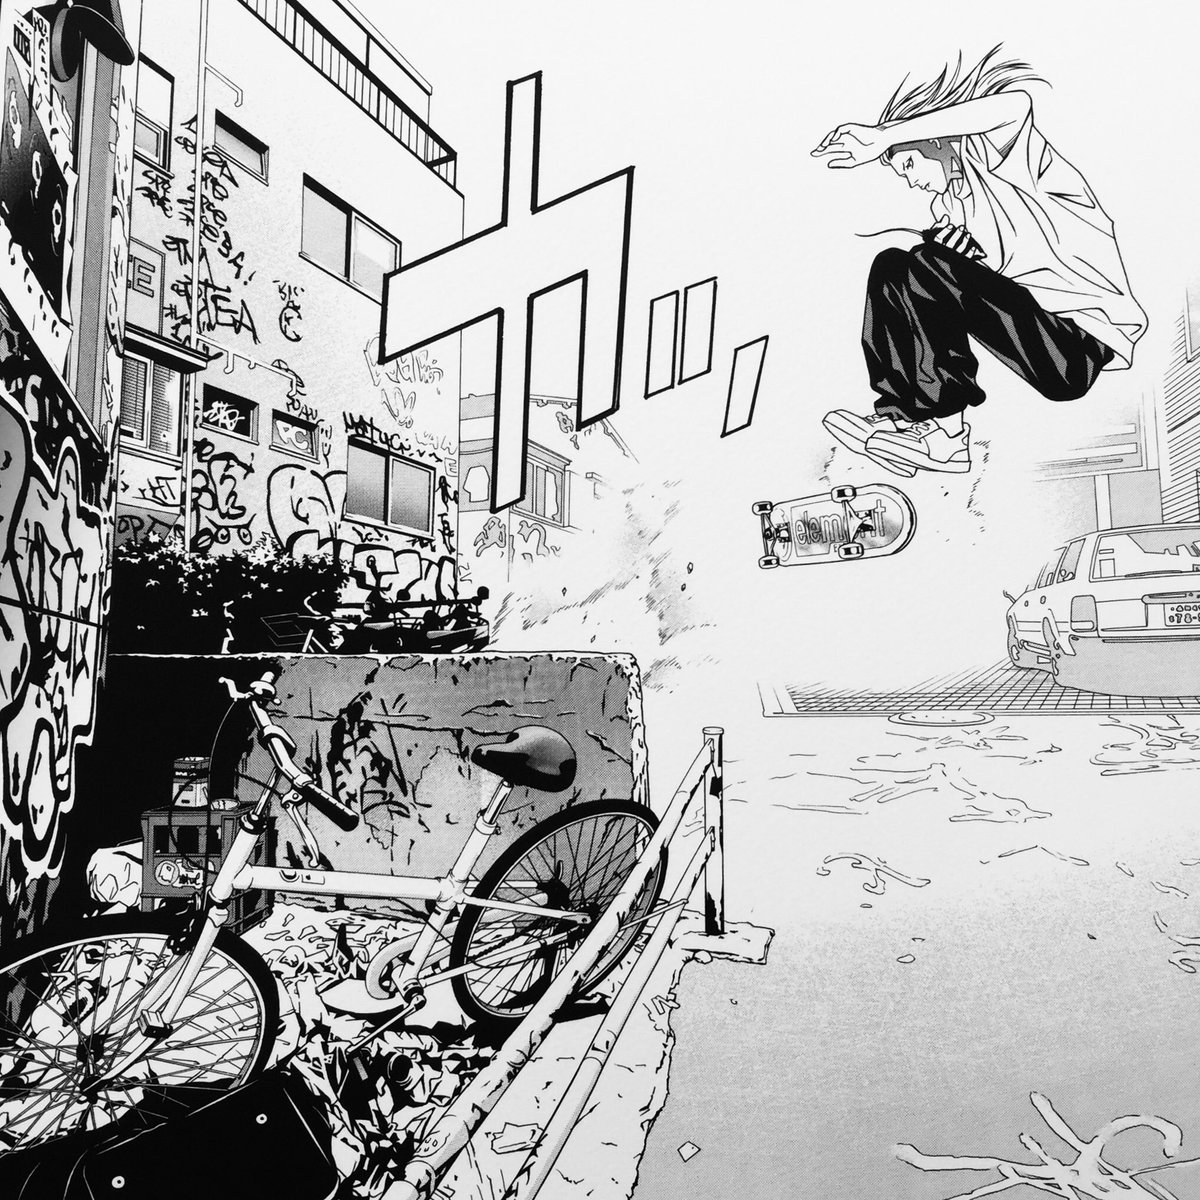 上條淳士 去年パリで開催され好評だった Manga都市tokyo 展が今週 ８月12日 水 から 国立新美術館で開催されます T Co Dewvbiojnp わたしも To Y や ８エイト から原画を出展させていただきます この機会にぜひお出かけください